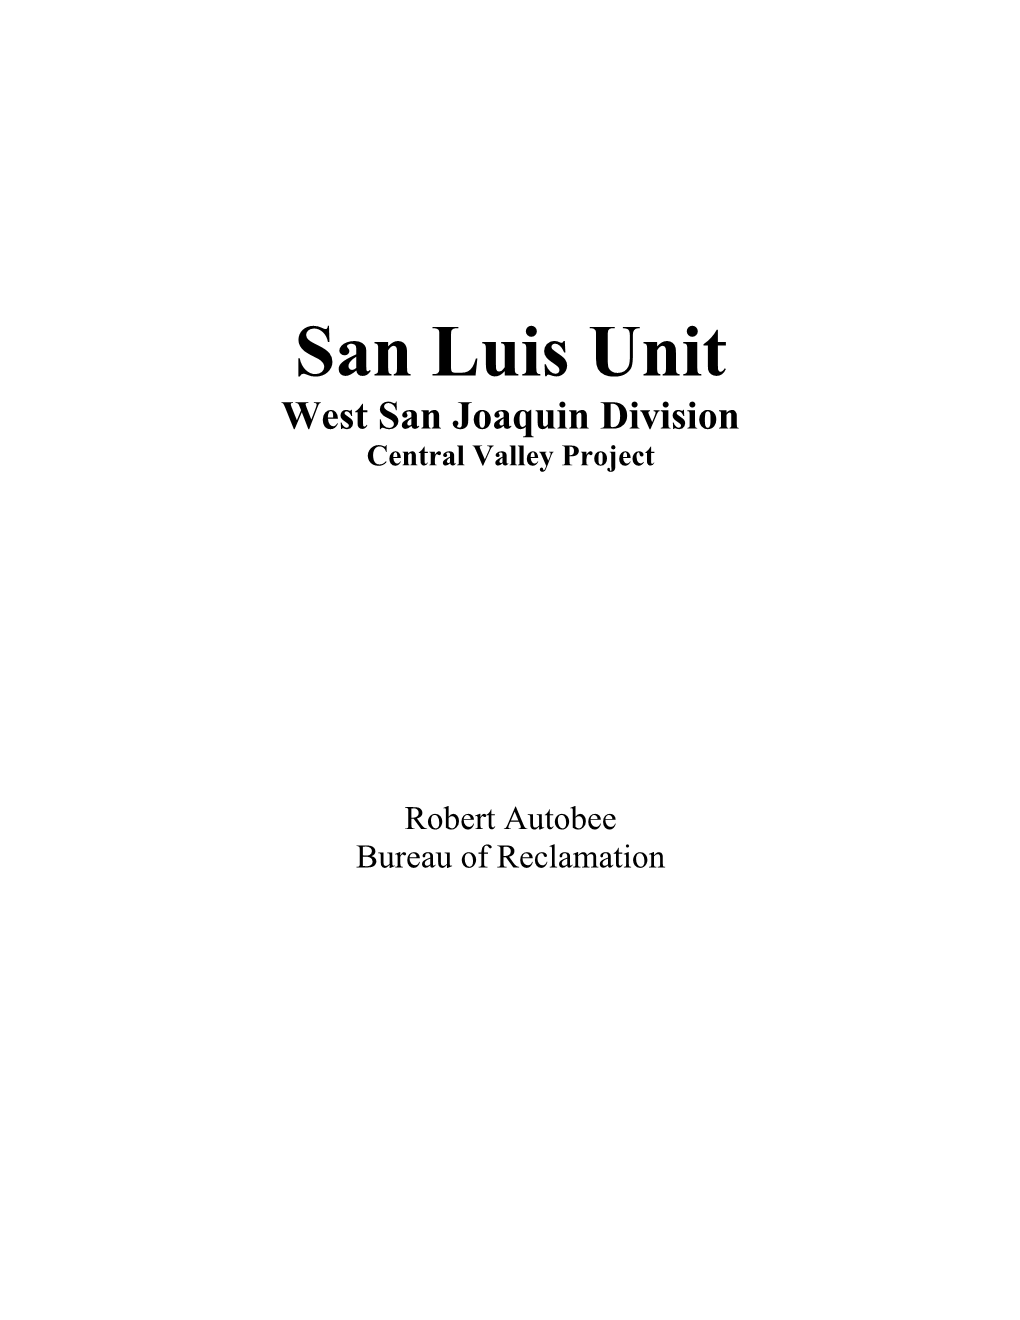 San Luis Unit Project History